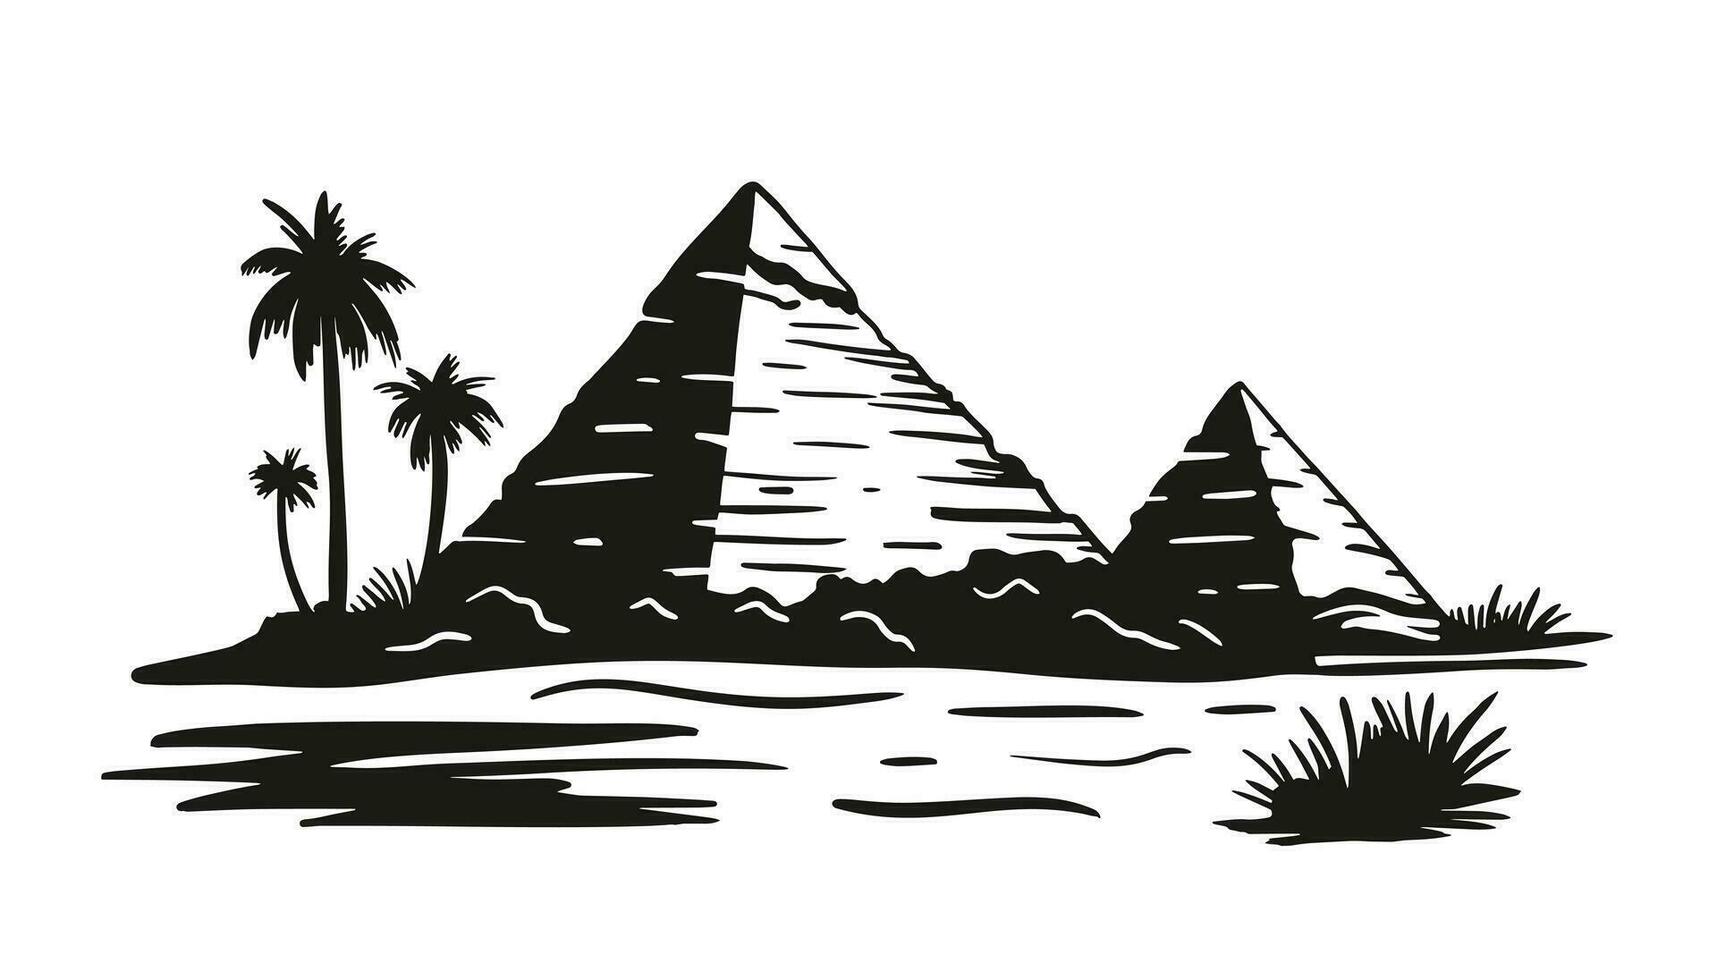 egipcio pirámides pirámide de cheops en El Cairo, giza. vector ilustración en grabado estilo